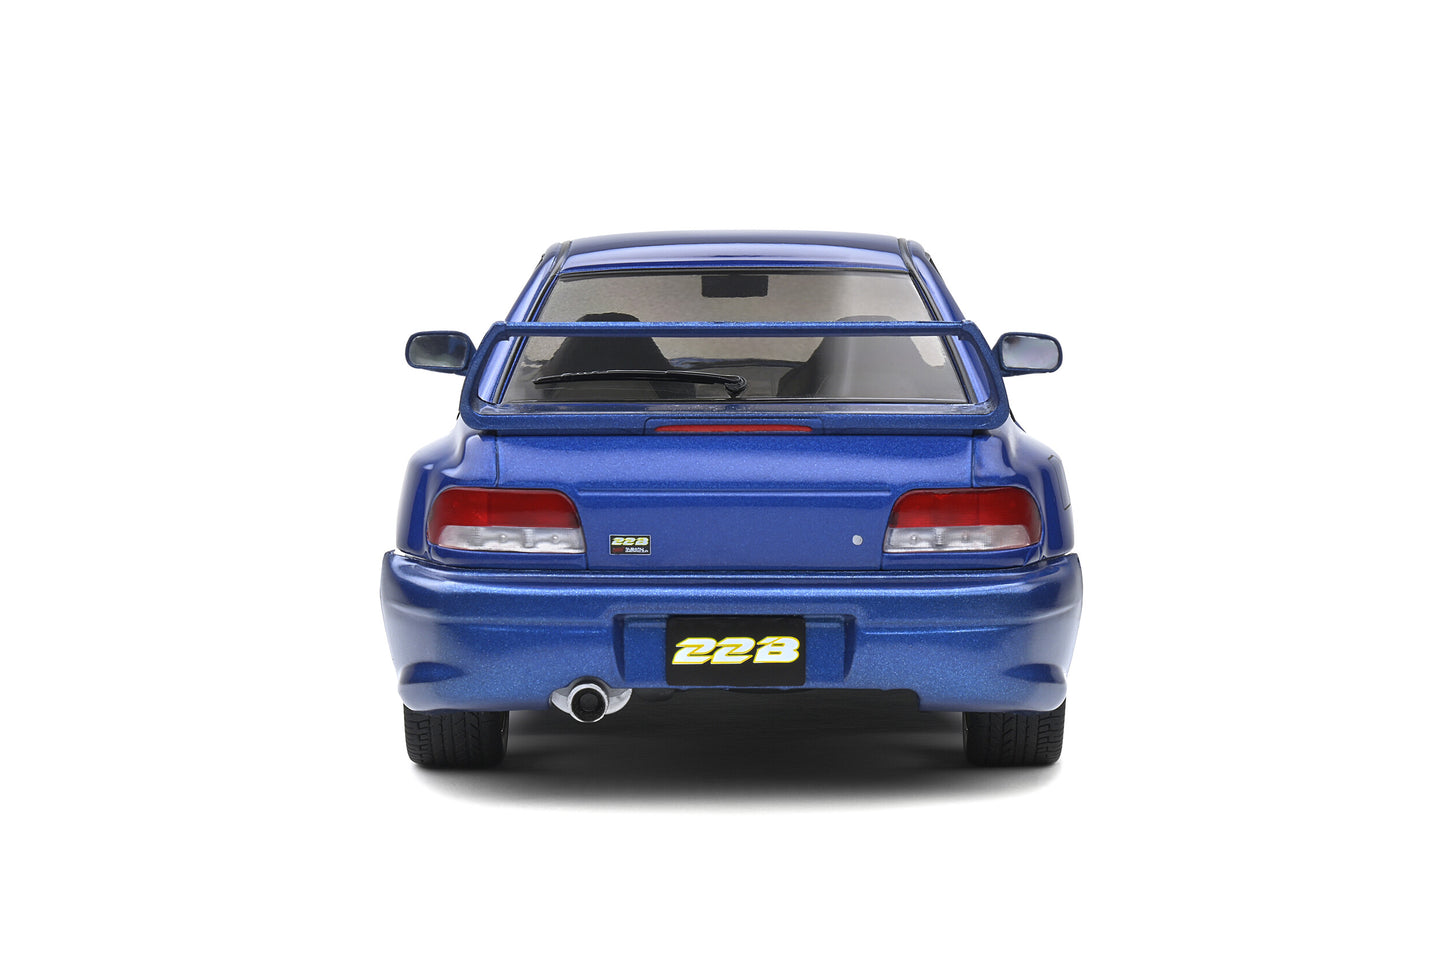 Solido - Subaru Impreza WRX STi 22B (Sonic Blue) 1:18 Scale Model Car